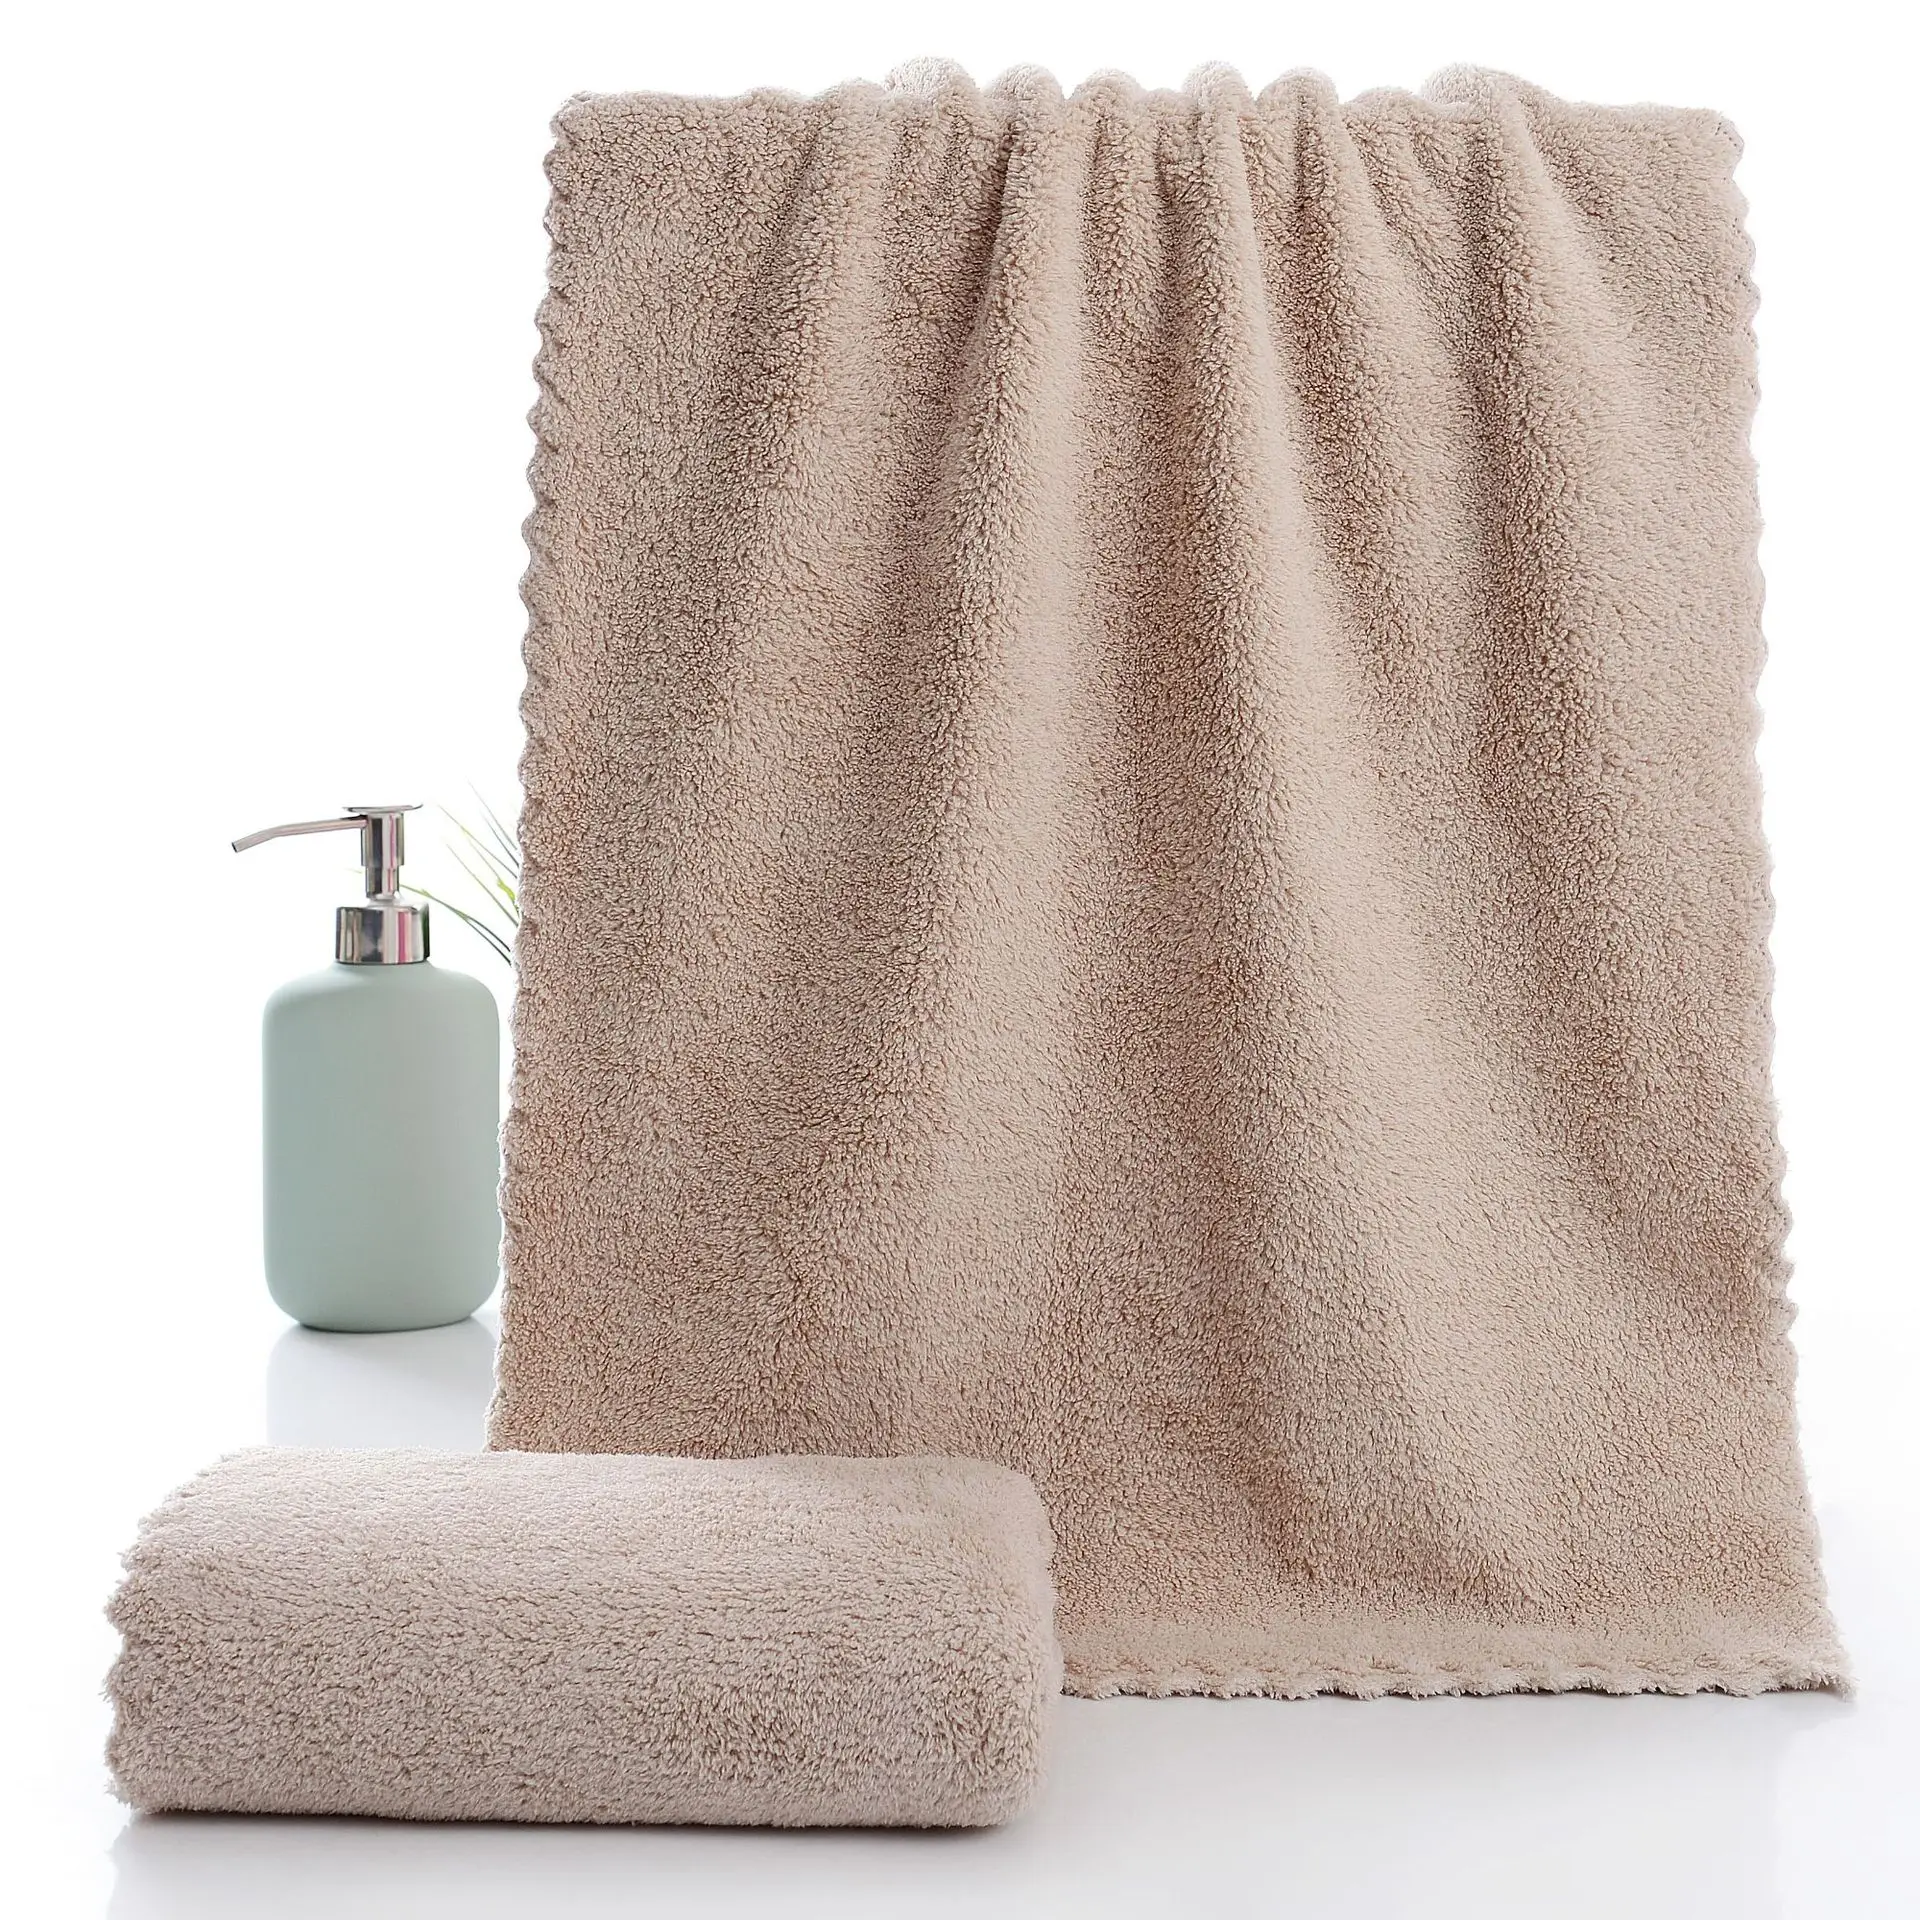 Полотенце из Корал-флиса плотная мыть лицо полотенце мягкое Впитывающее домашних парных универсальное полотенце не ворса, не выцветает - Цвет: 3